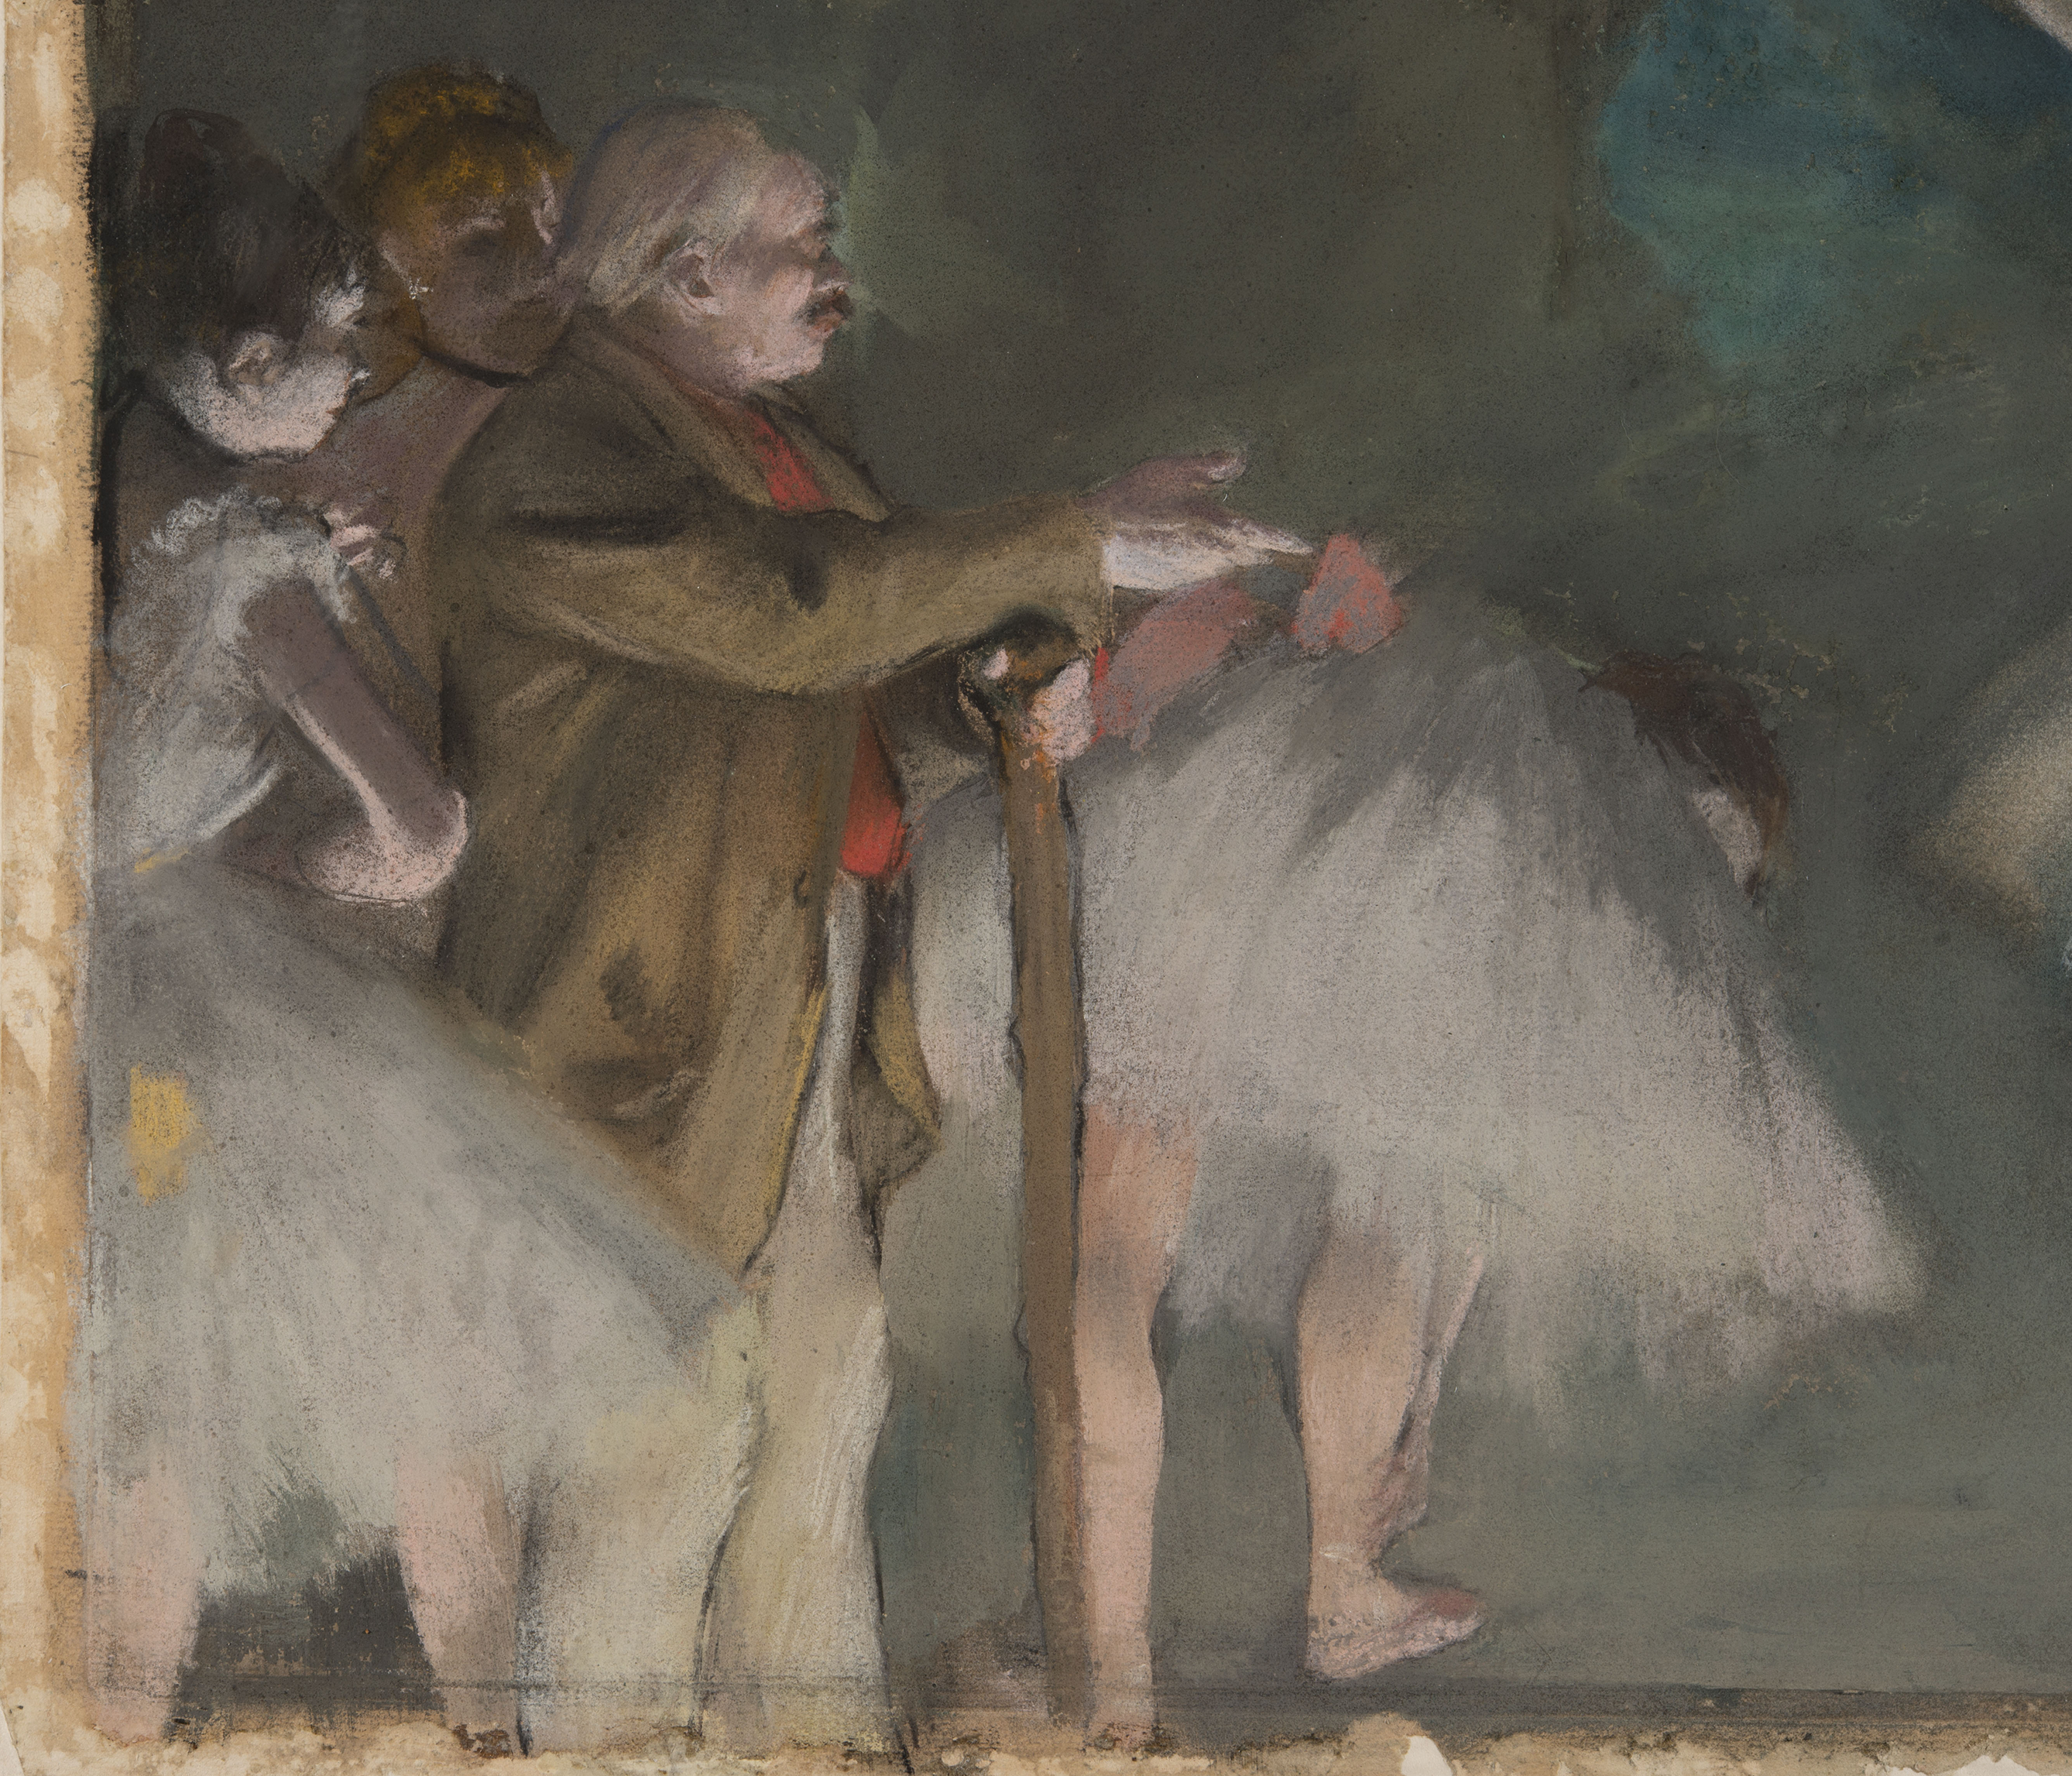 BE@RBRICK Edgar Degas "Ballet"